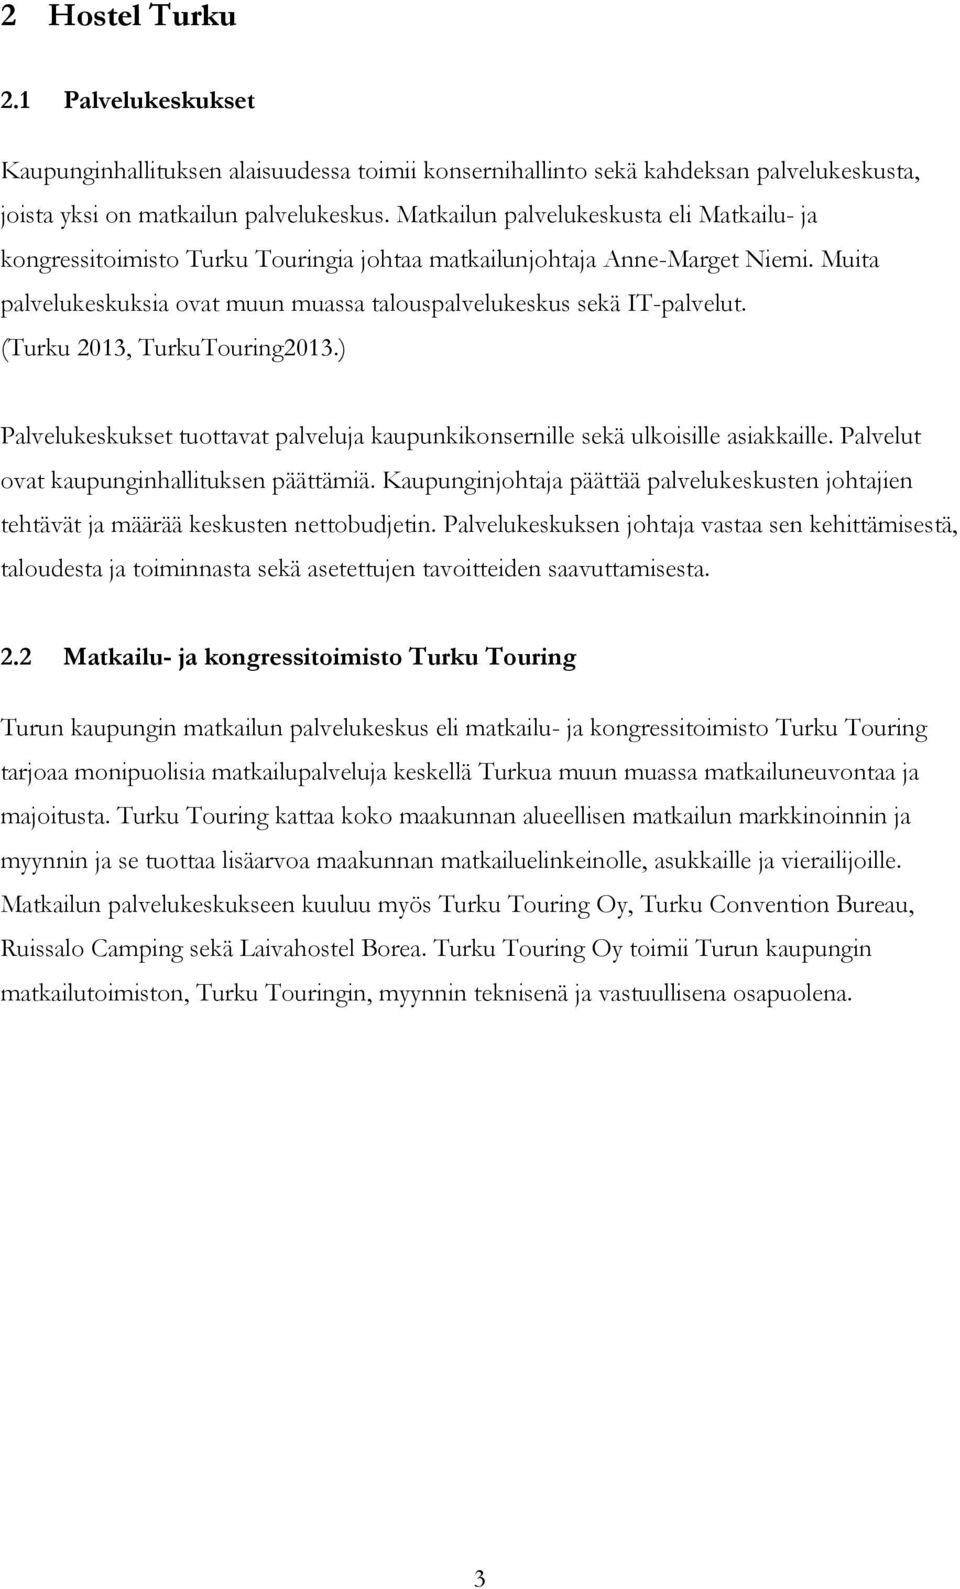 (Turku 2013, TurkuTouring2013.) Palvelukeskukset tuottavat palveluja kaupunkikonsernille sekä ulkoisille asiakkaille. Palvelut ovat kaupunginhallituksen päättämiä.